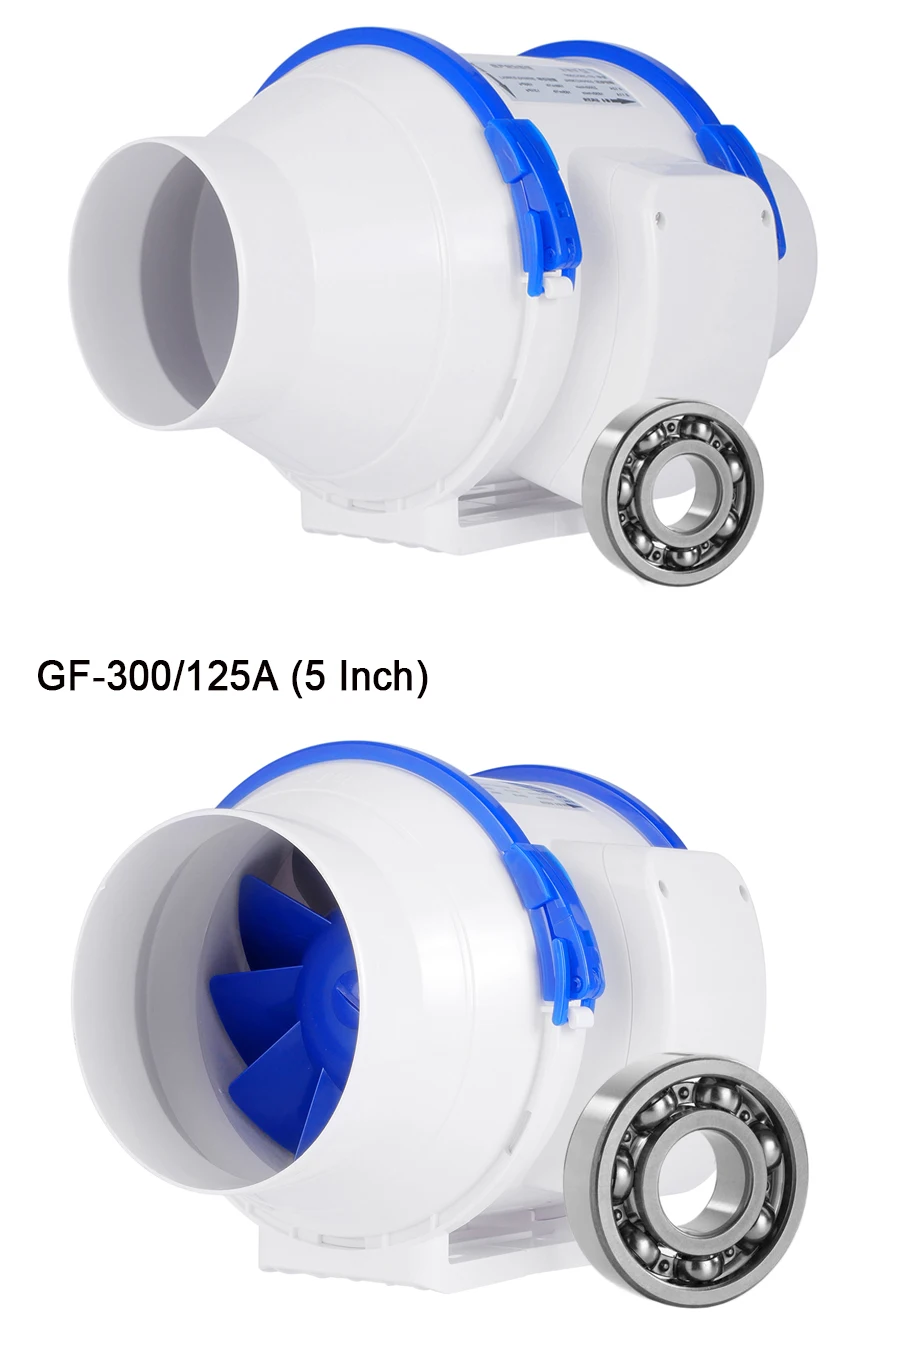 Hon& Guan 110 V встроенные вентиляторы, 5 ''(ø125mm) Встроенный воздуховод вытяжной вентилятор Макс поток воздуха 280m3/h для ванной комнаты, теплицы, гидропоники